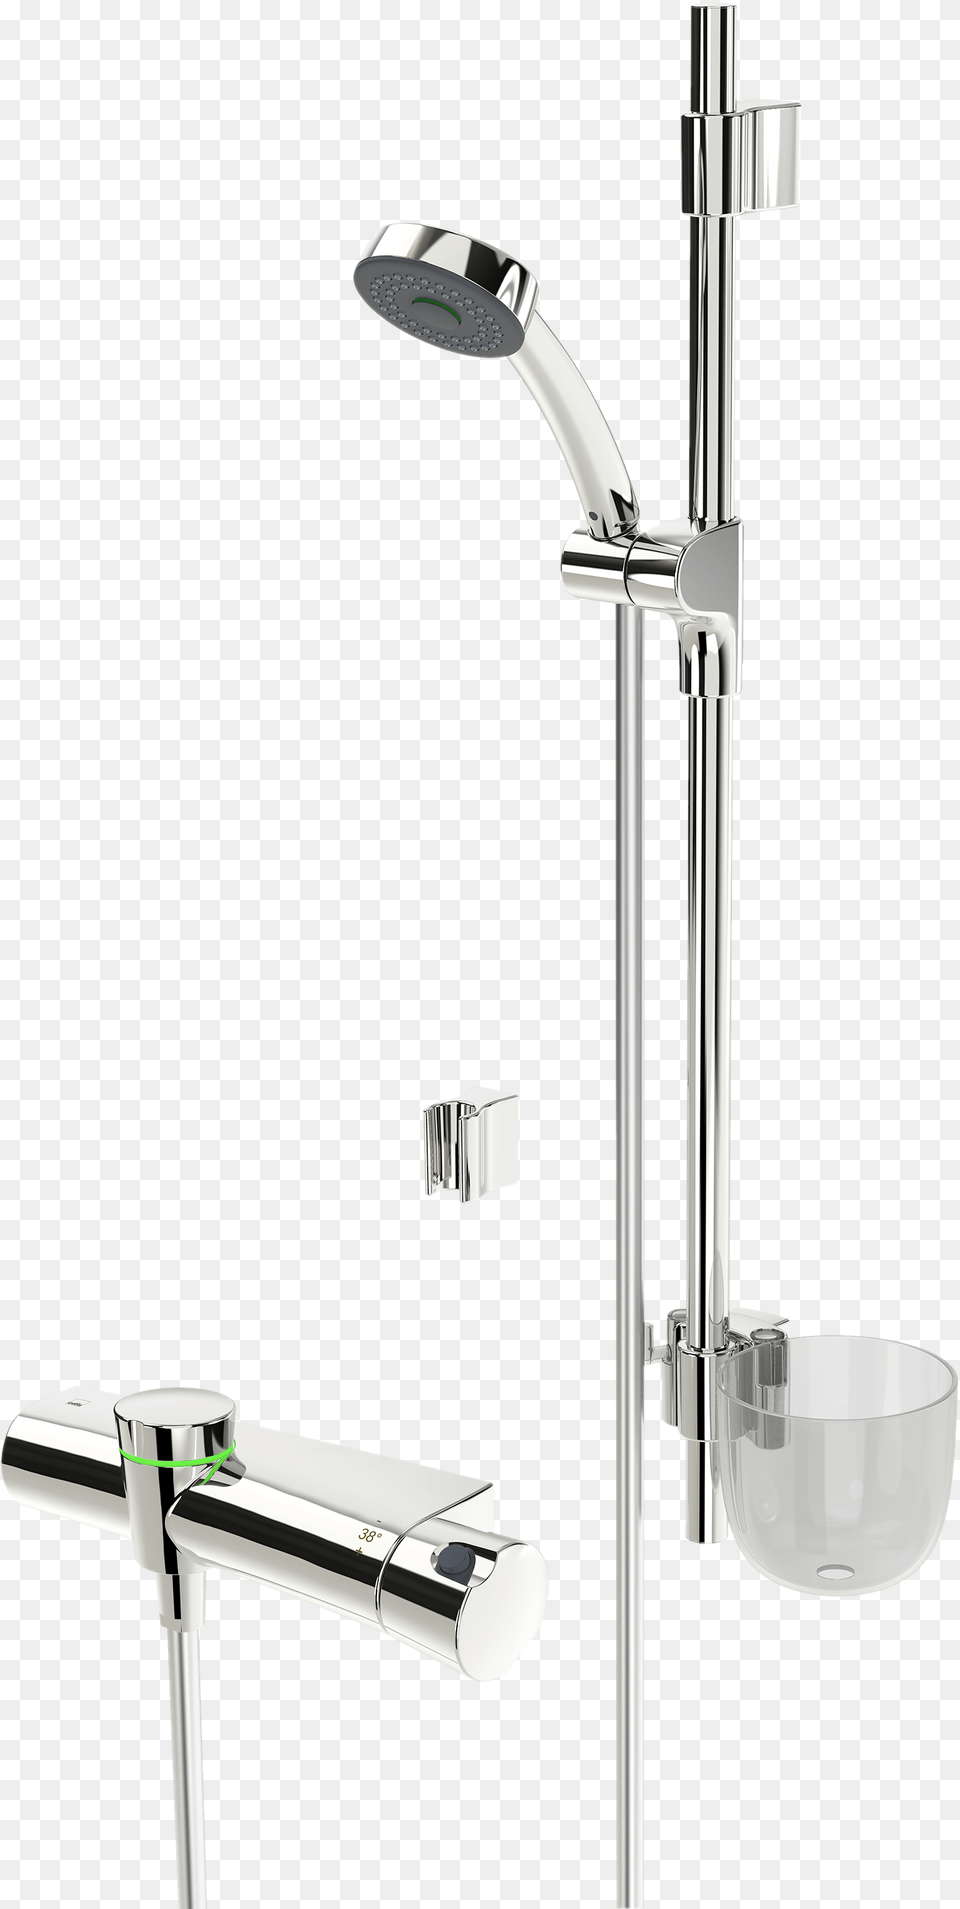 Shower Faucet With Shower Set 3 V Shower Head, Indoors, Bathroom, Room, Shower Faucet Png